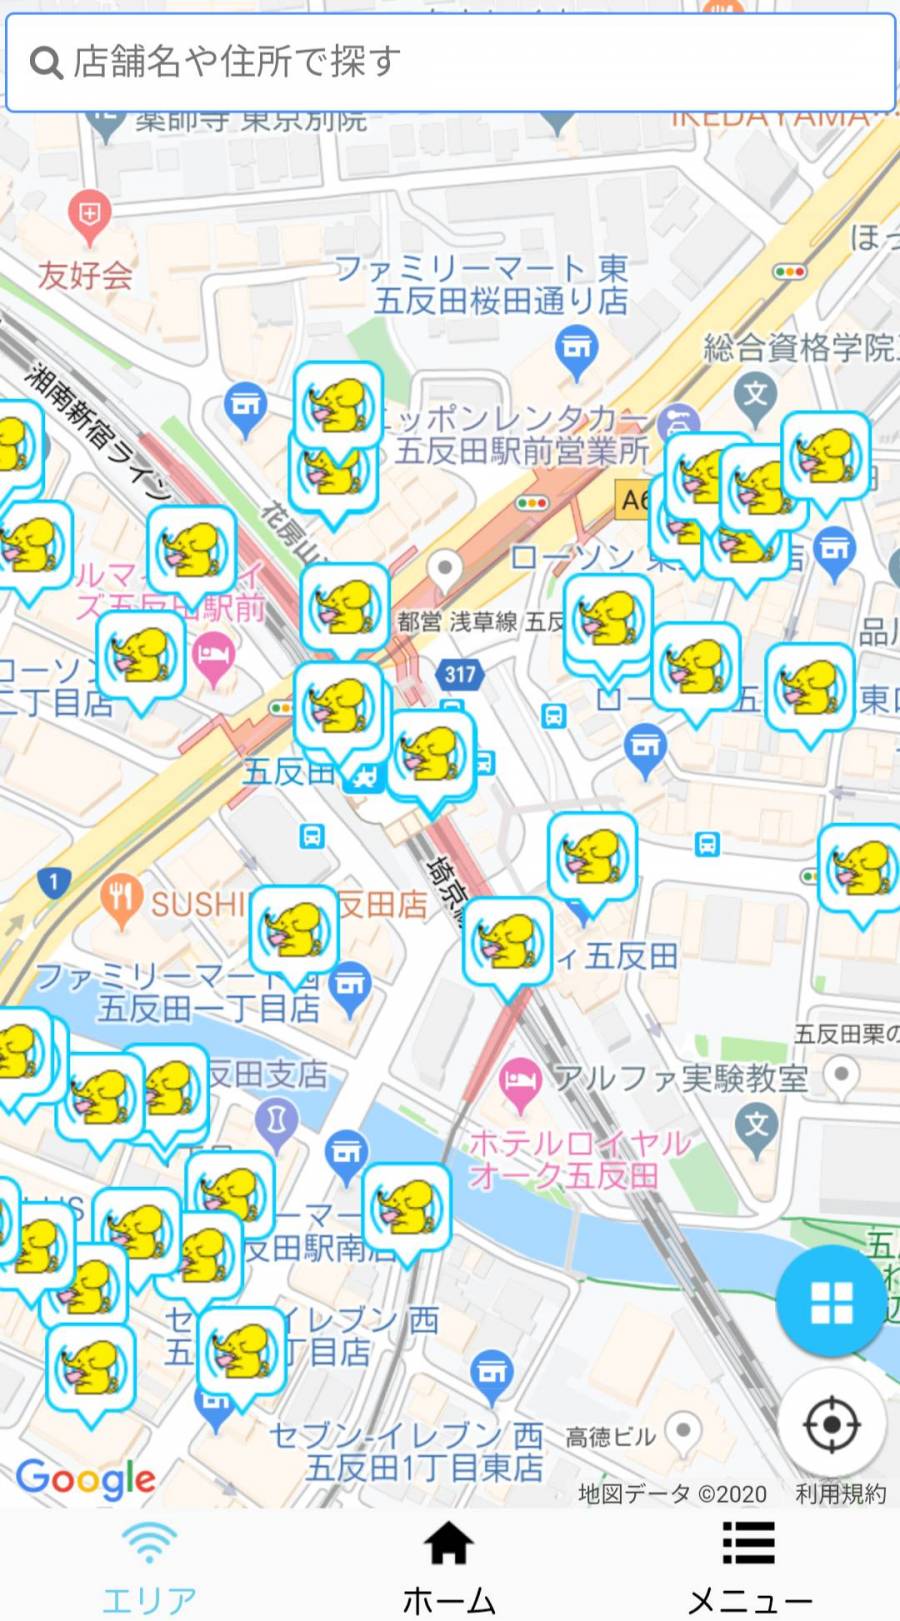 『ギガぞう』アプリ 周辺のスポット検索マップ